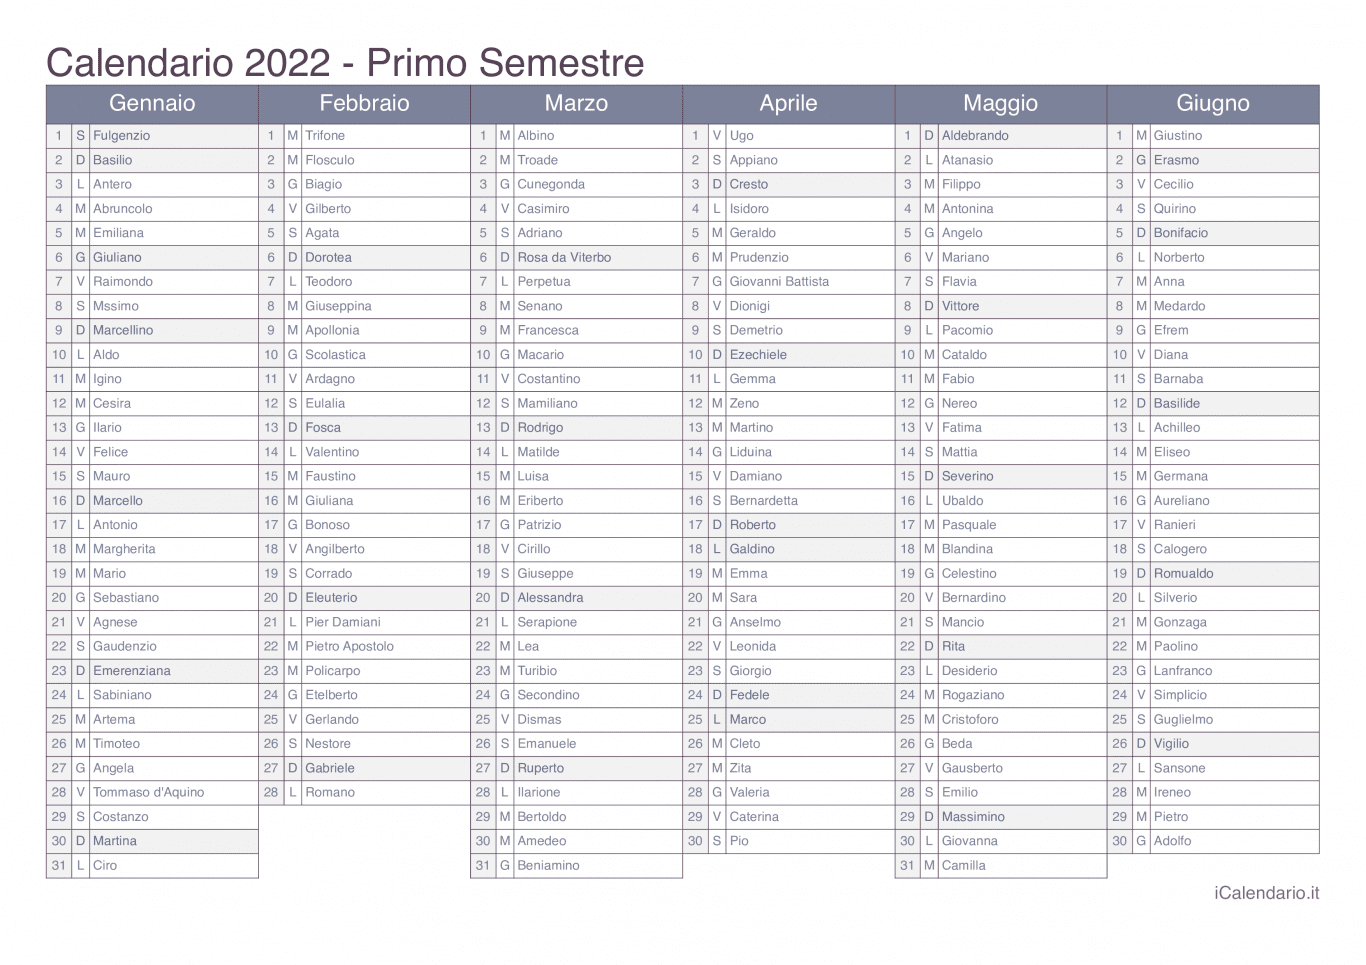 Calendario semestrale 2022 con santi e festivi - Office